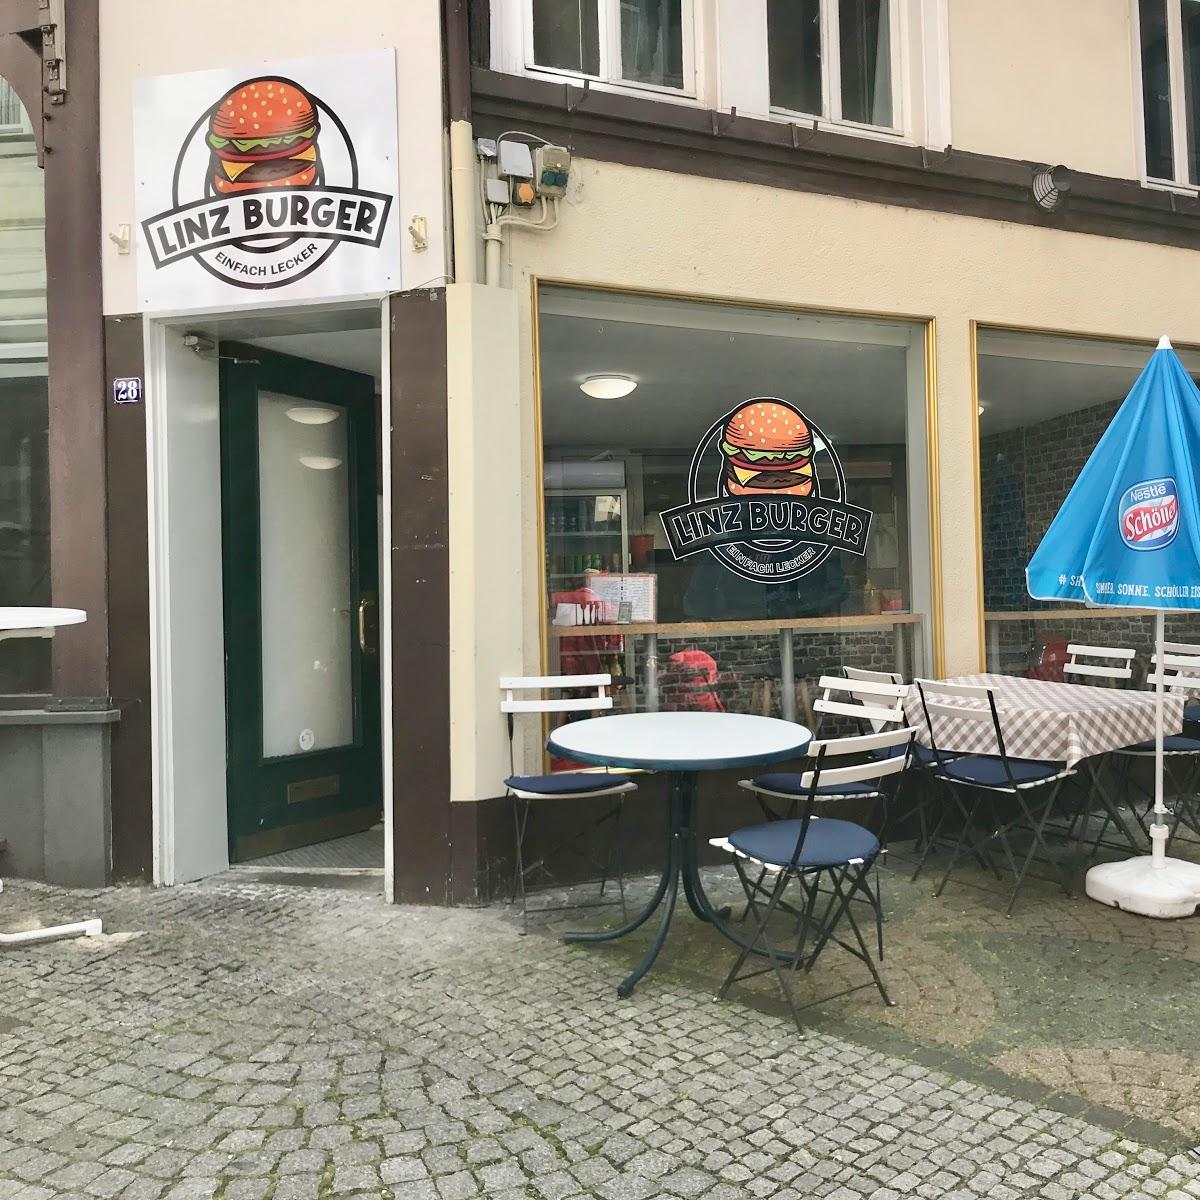 Restaurant "Linz Burger" in Linz am Rhein